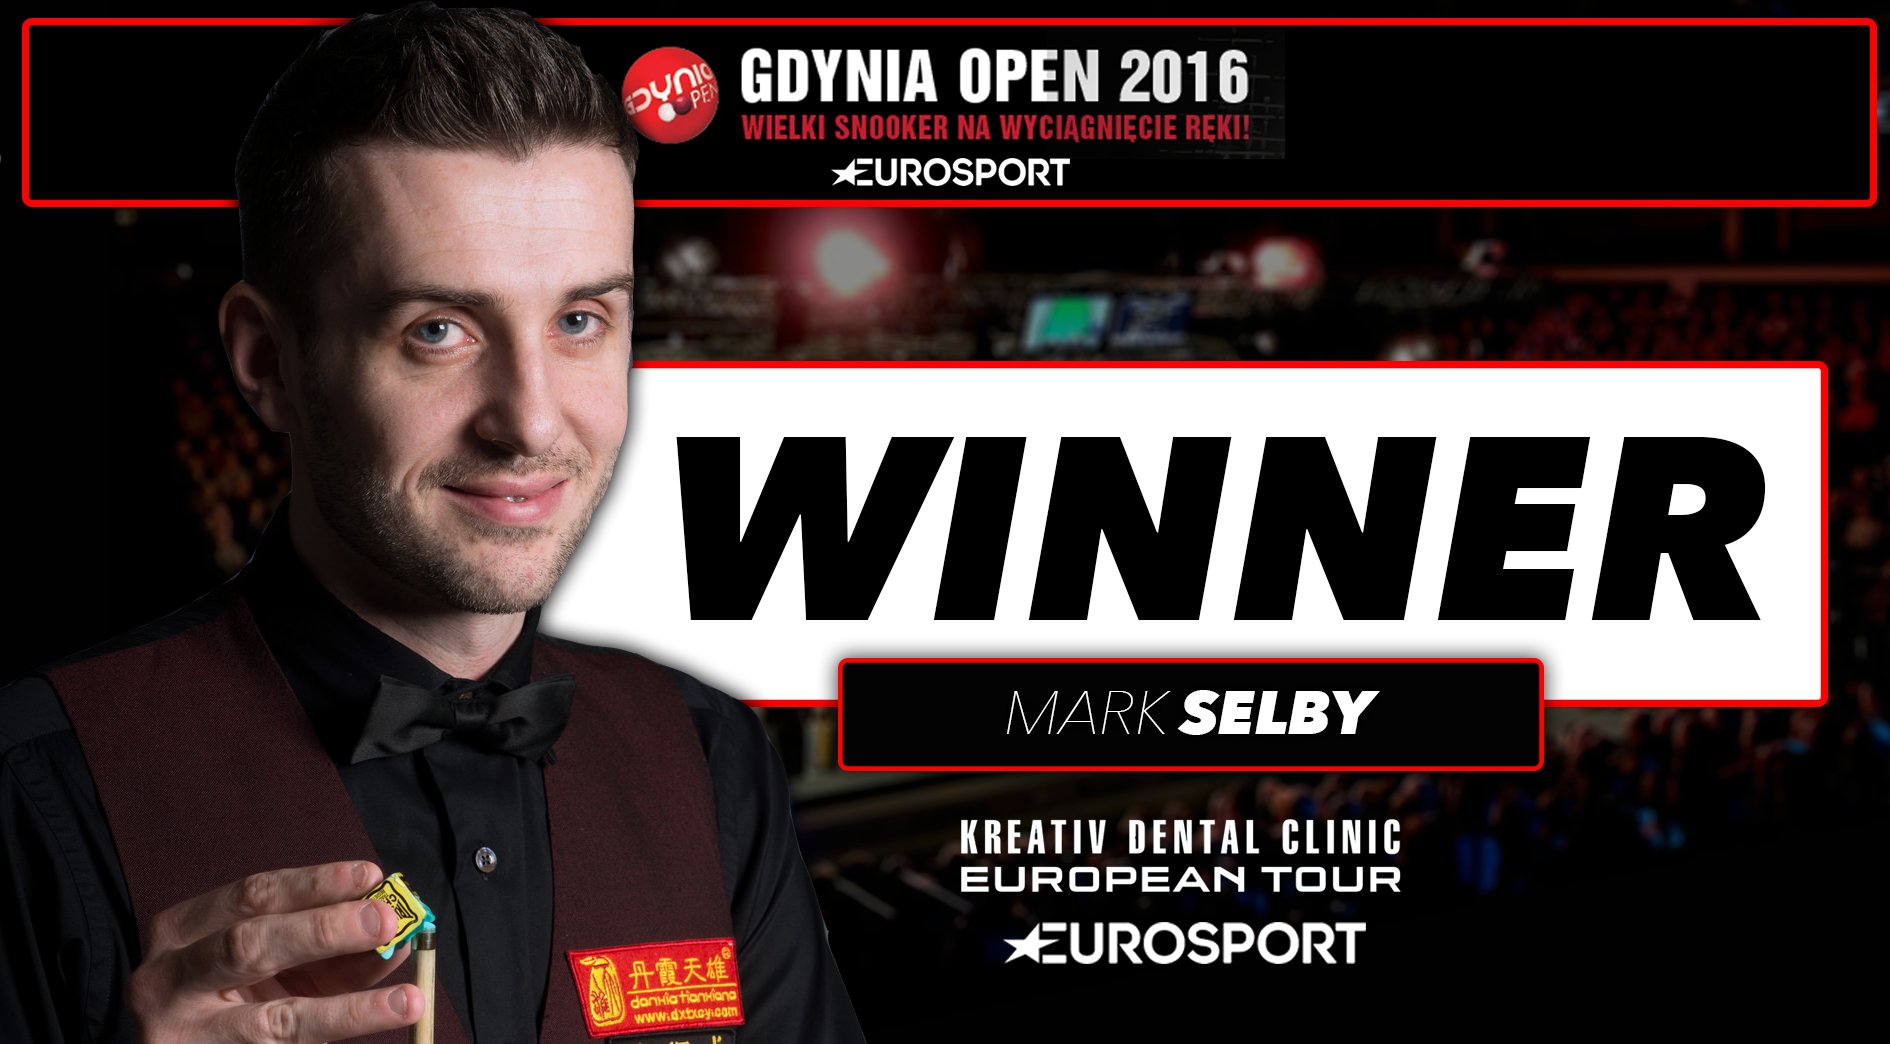 توییتر/ World Snooker Tour در توییتر «WINNER Mark Selby beats Martin Gould 4-1 in the final to win the 2016 #GdyniaOpen! 🇵🇱 Congratulations Mark! 🃏 